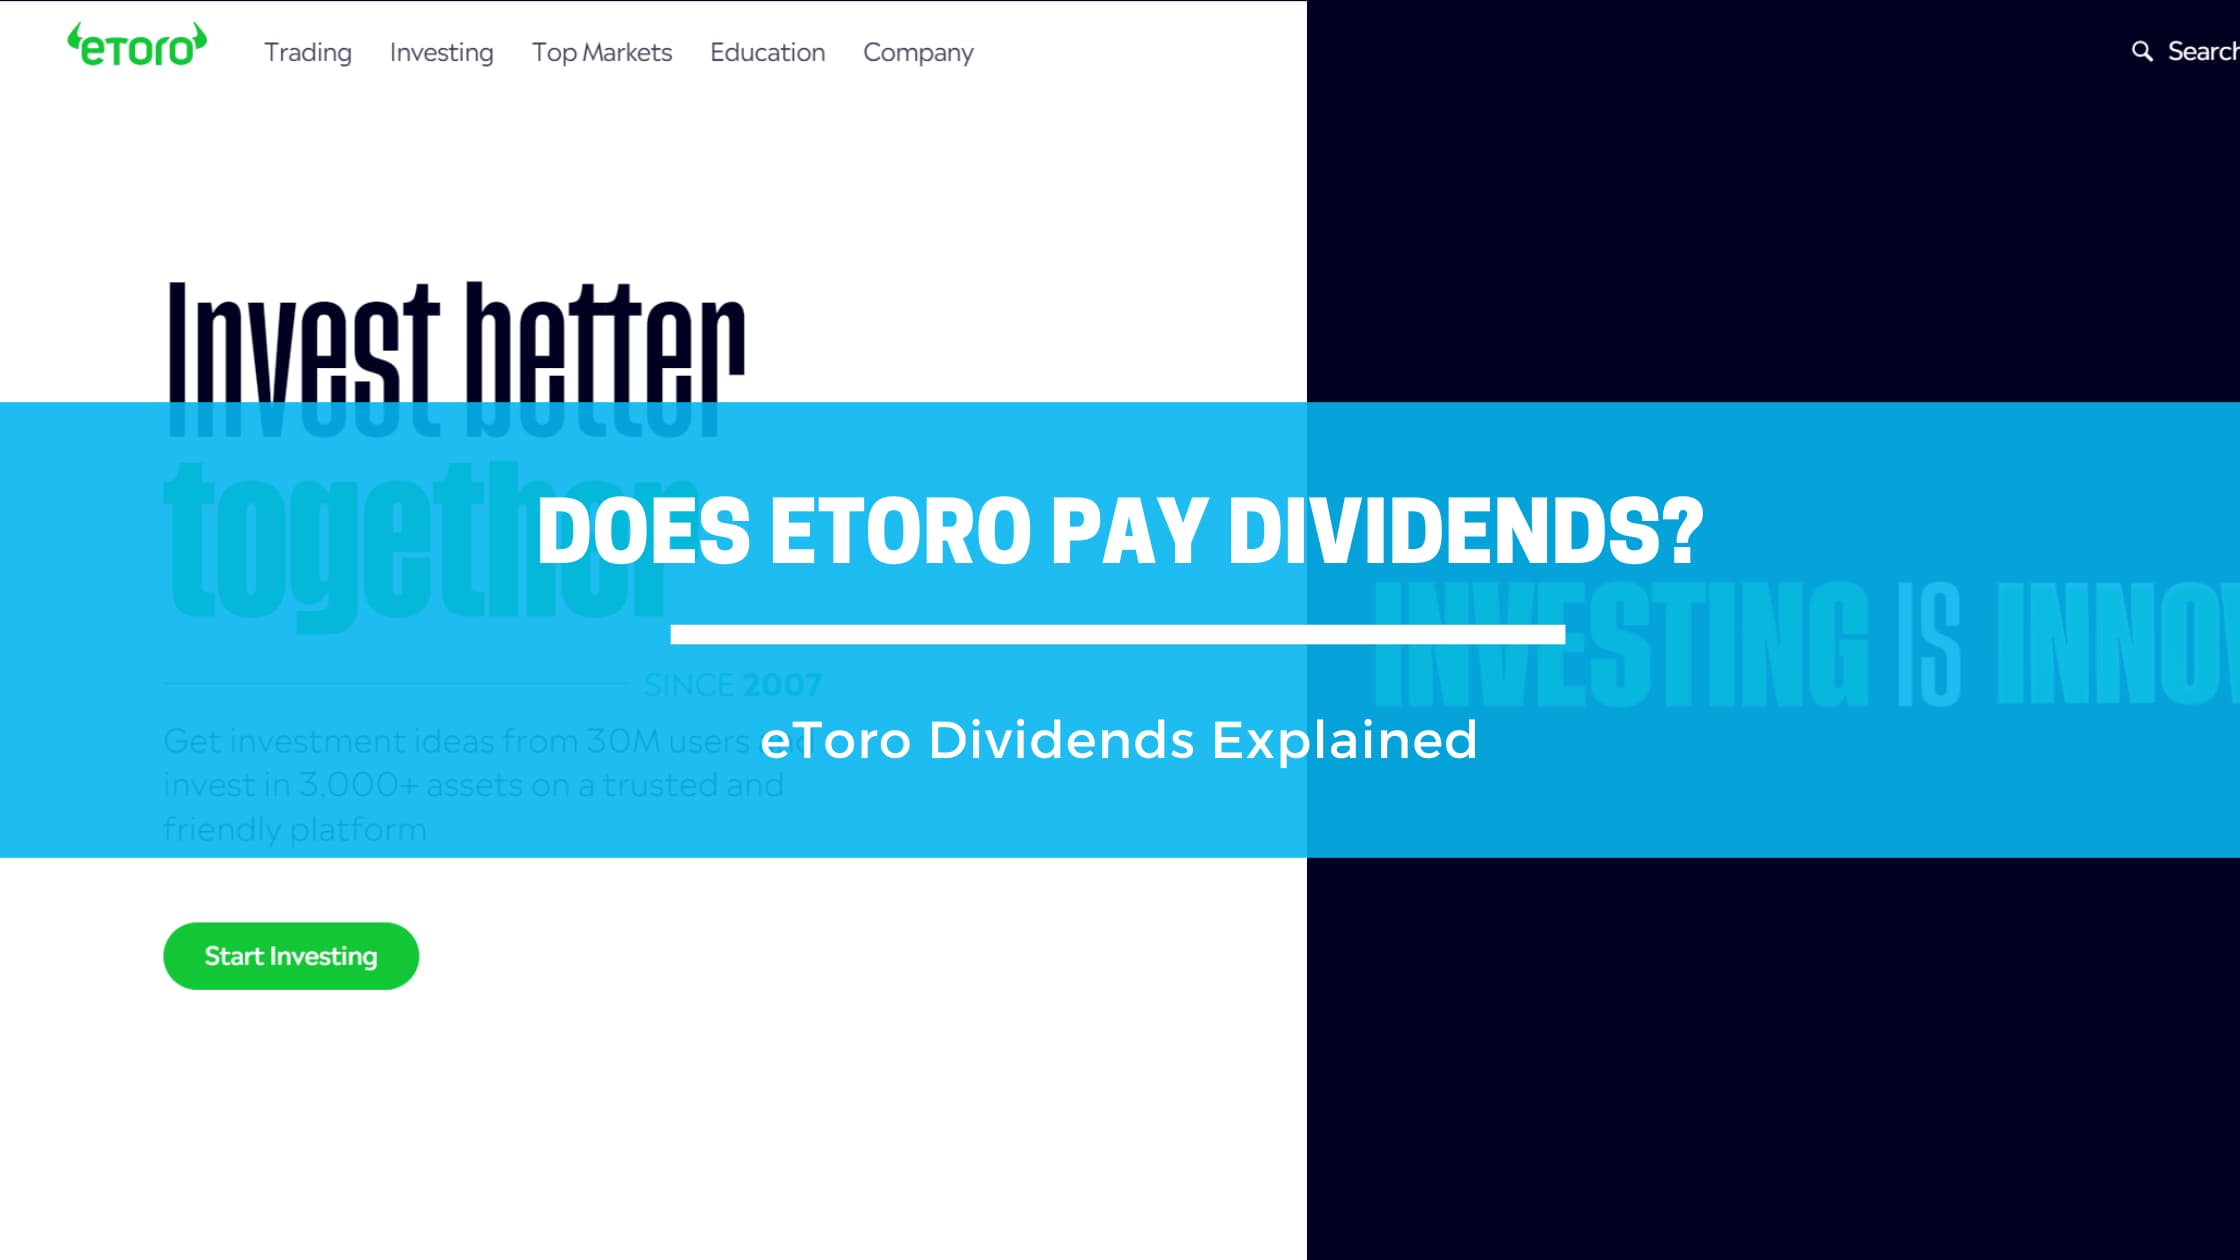 eToro Dividends